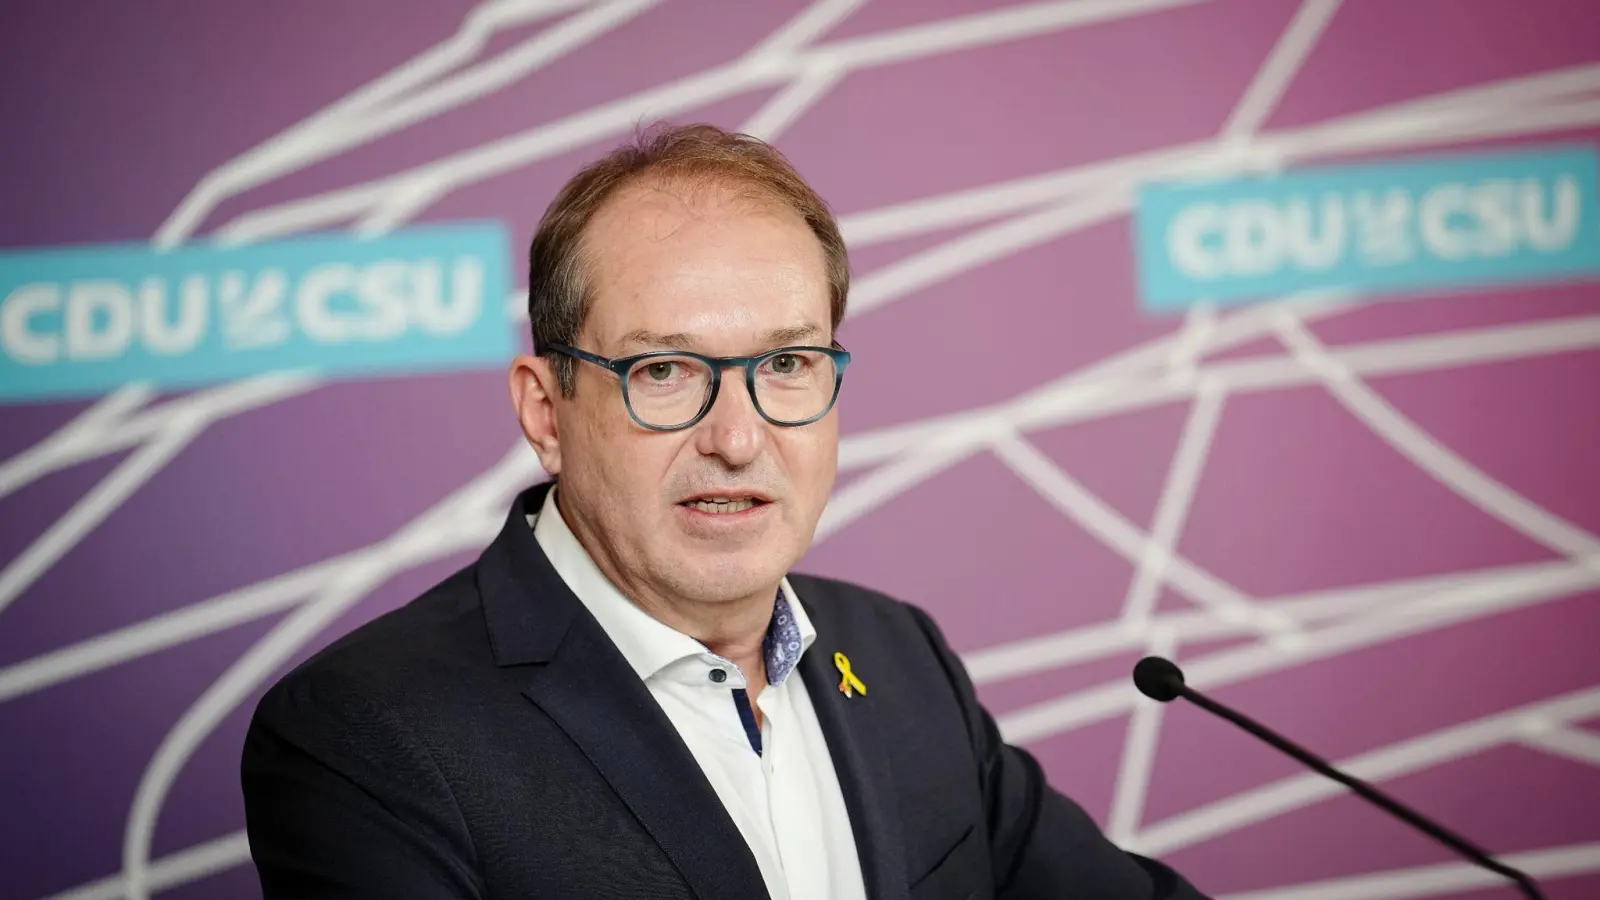 CSU-Landesgruppenchef Alexander Dobrindt gibt ein Pressestatement. (Foto: Kay Nietfeld/dpa/Archivbild)